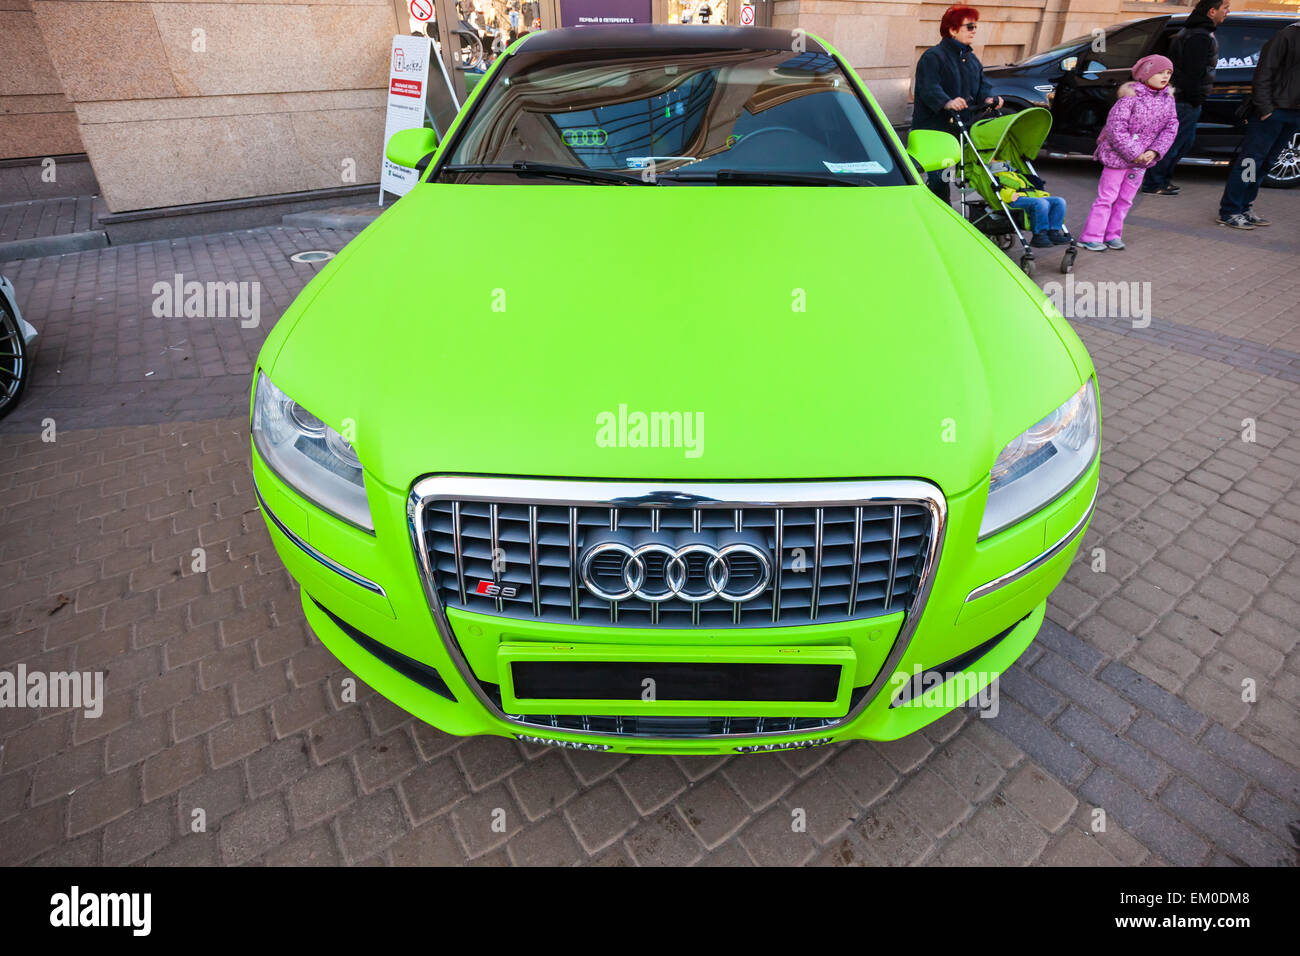 San Pietroburgo, Russia - 11 Aprile 2015: verde brillante in stile sportivo Audi S8 supporti auto parcheggiate sulla strada. Ampio angolo Foto Stock